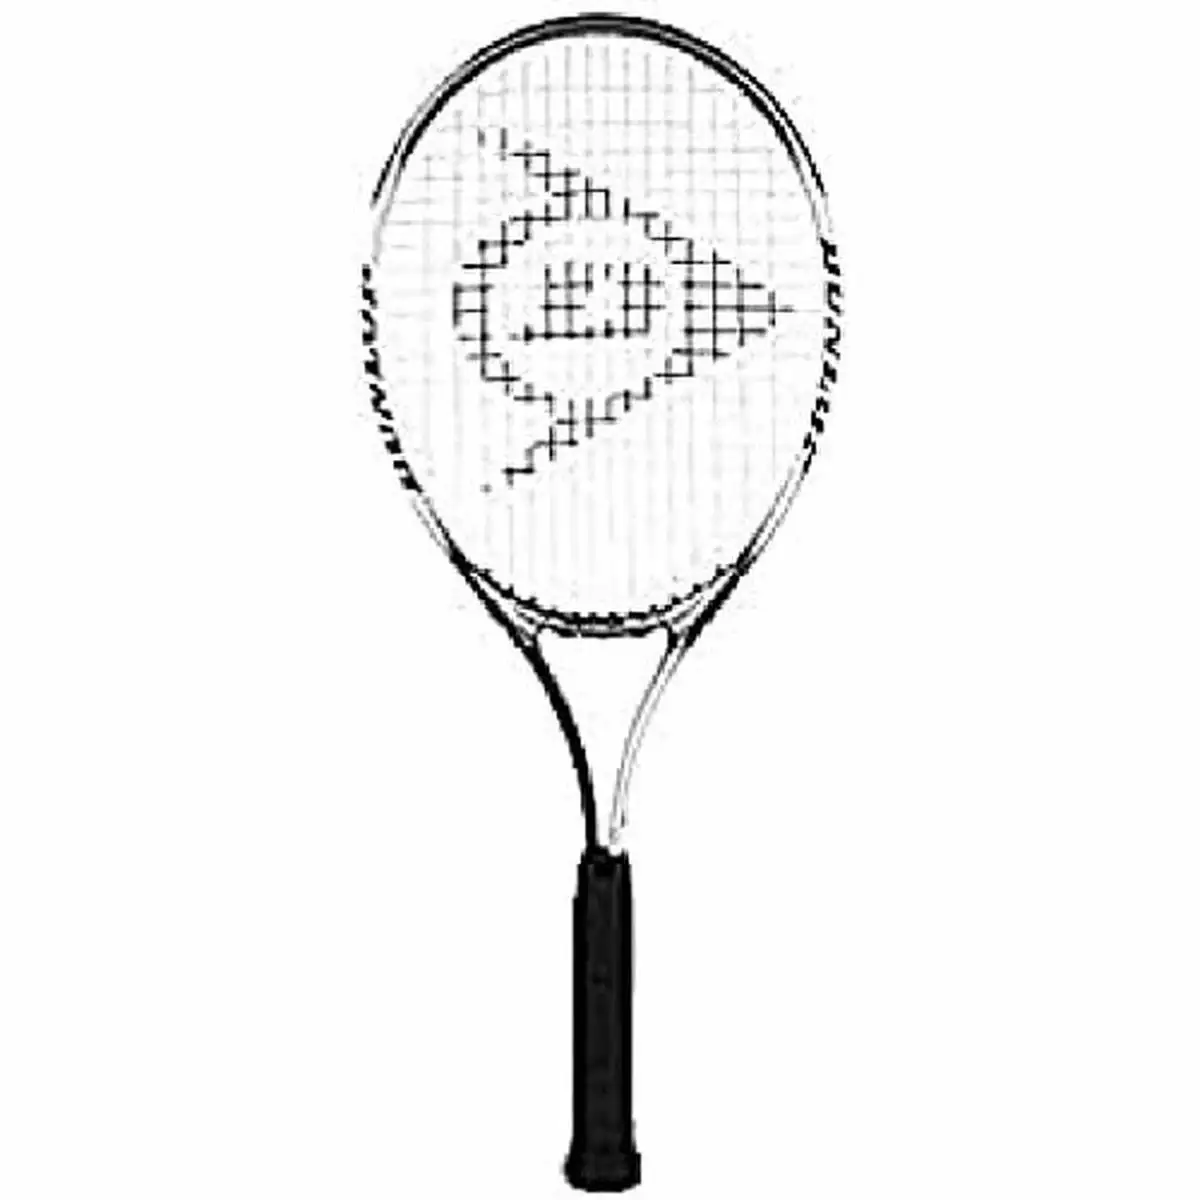 Raquette de tennis d tr nitro 27 g2 dunlop 677321 noir_3218. DIAYTAR SENEGAL - L'Art de Magasiner sans Frontières. Parcourez notre vaste sélection d'articles et trouvez tout ce dont vous avez besoin, du chic à l'authentique, du moderne au traditionnel.